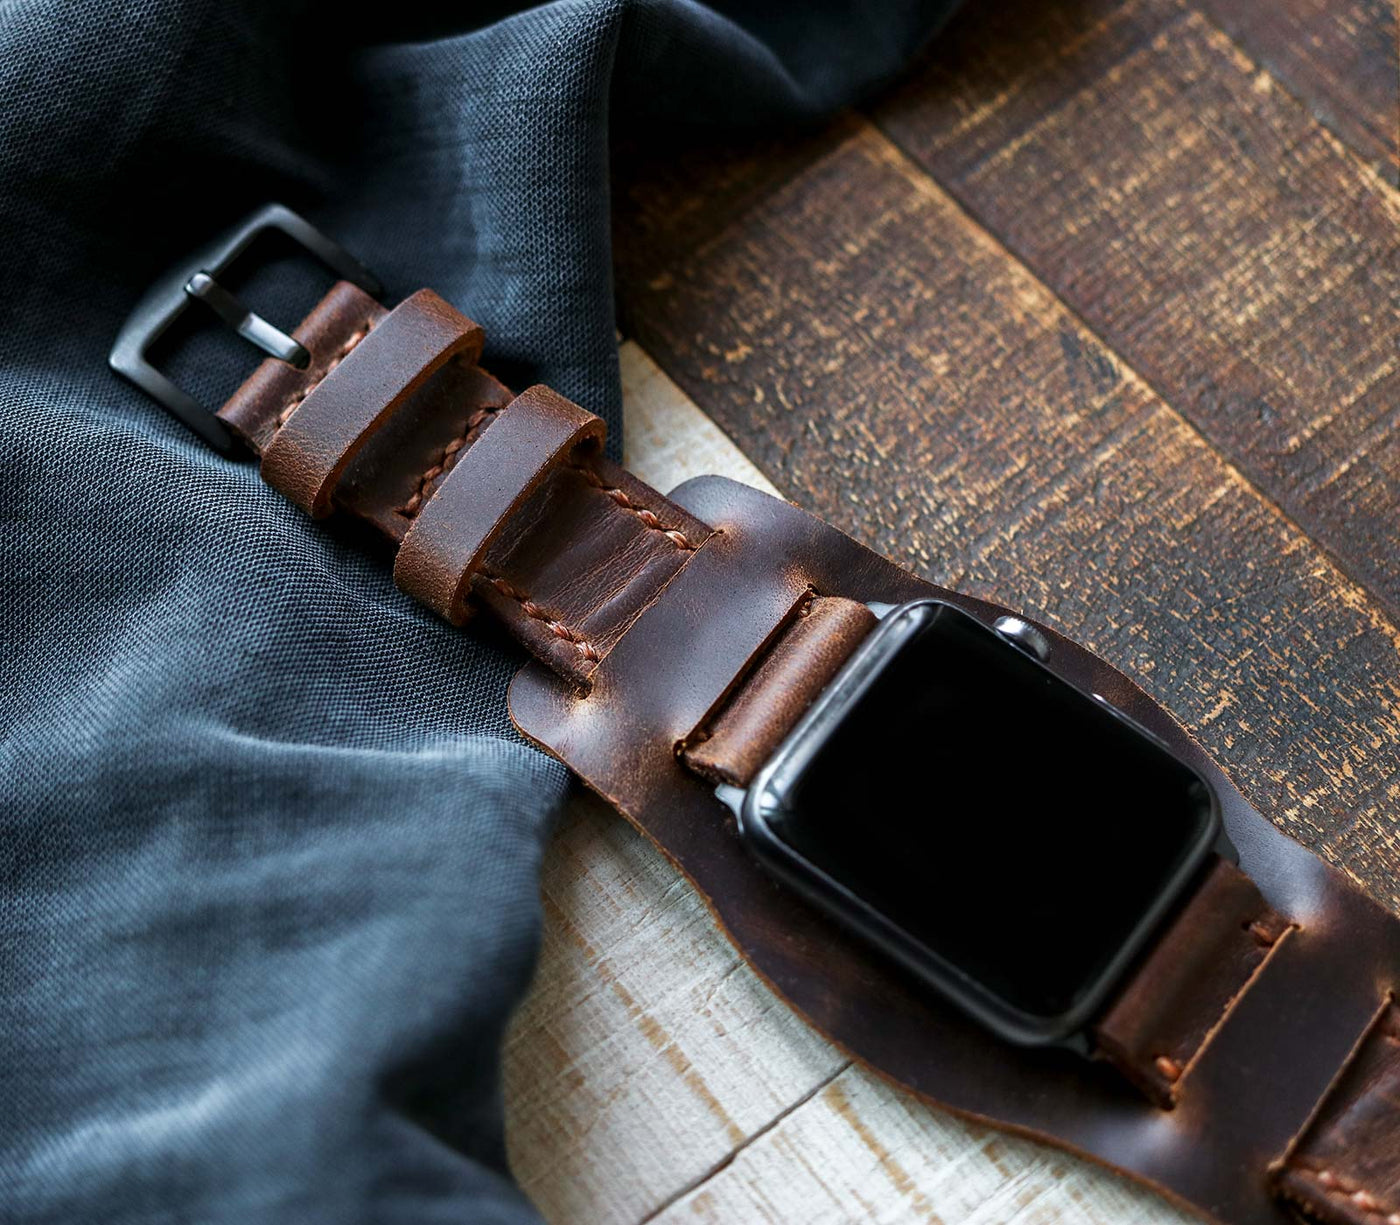 Custom Made Apple Watch Bund Strap - Antique Brown